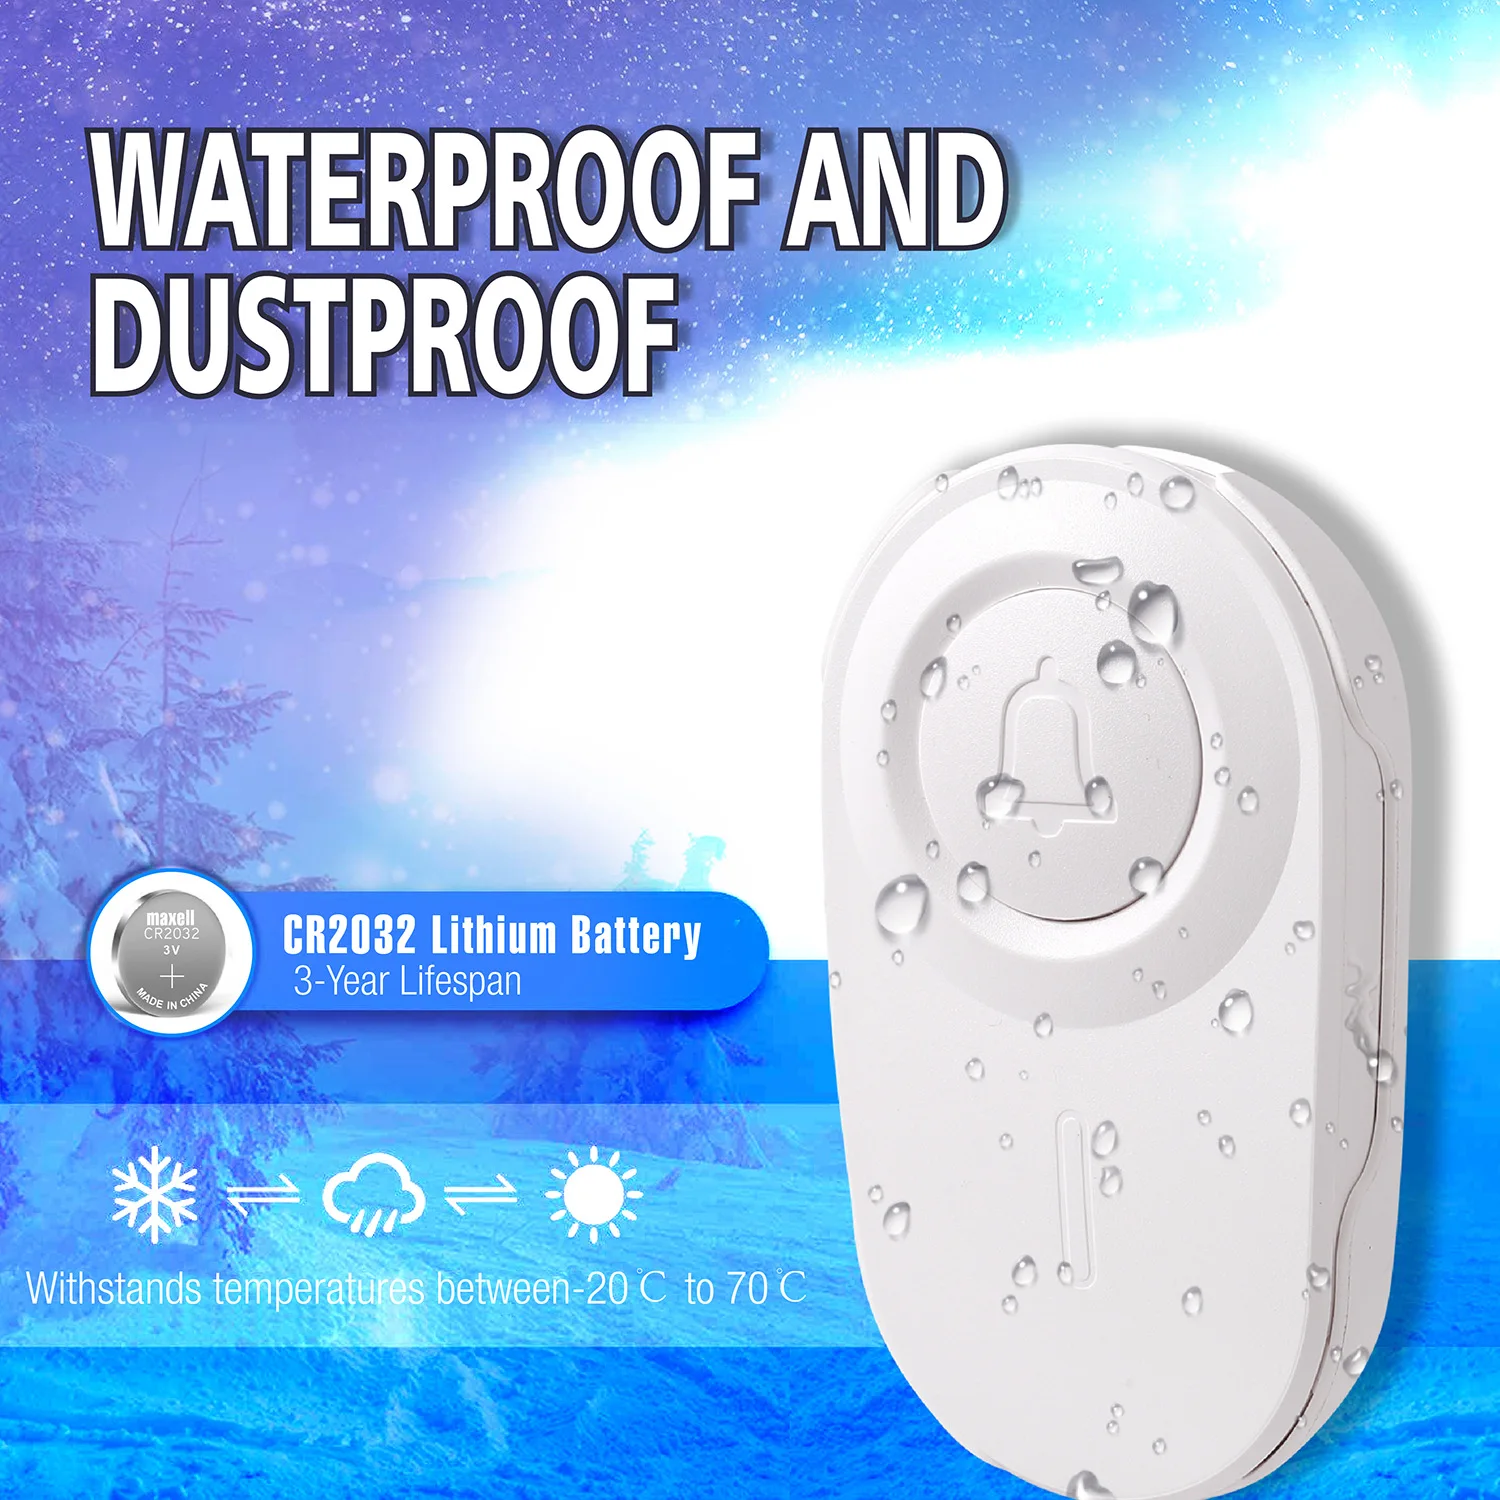 Outdoor Smart Wireless Doorbell Waterproof Protective Home Door Bell Remote Control House Security Alarm Ring Multi-functions enlarge